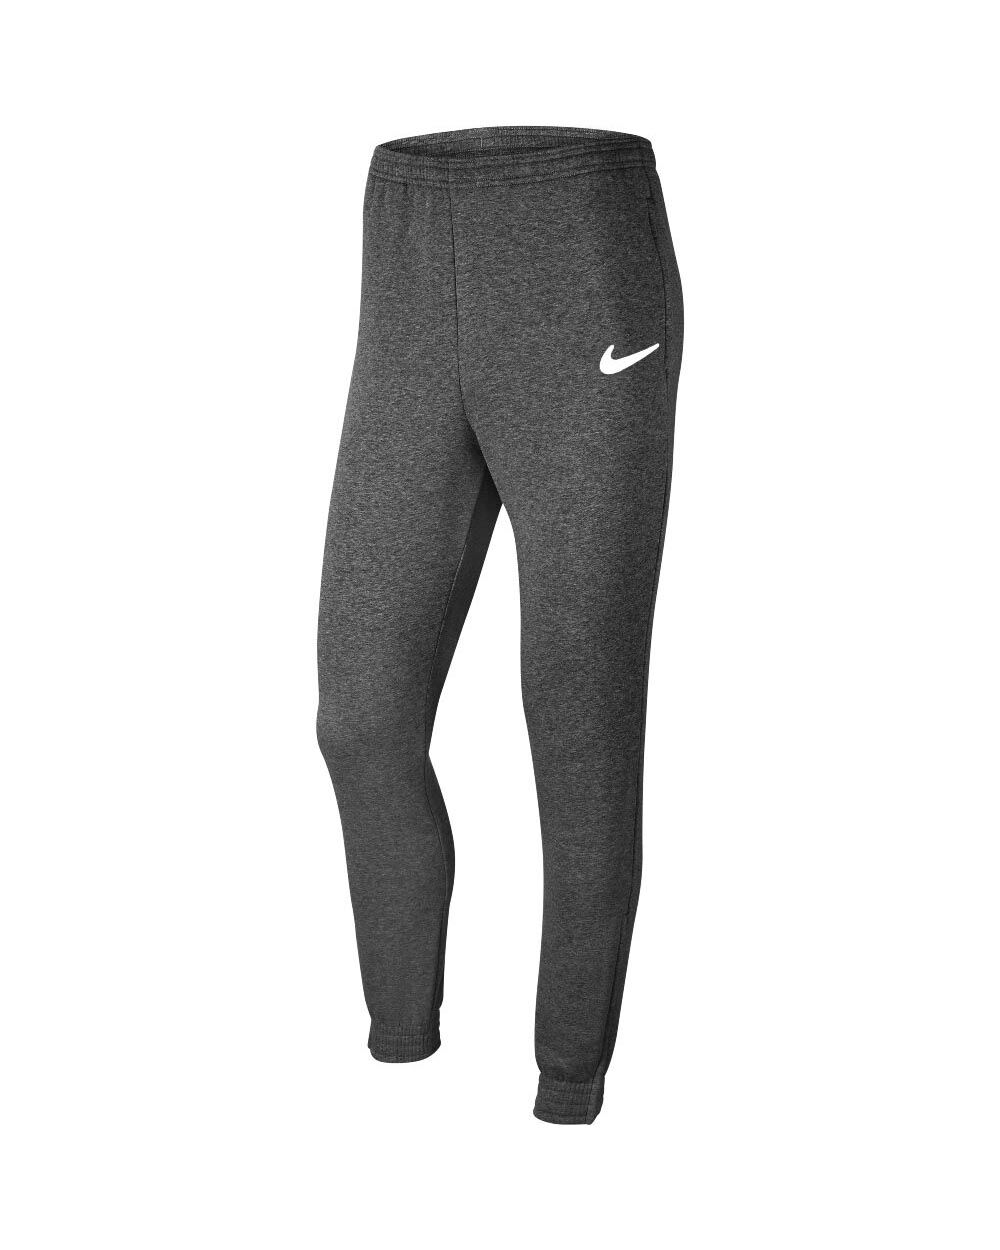 Pantalón de chándal Nike Team Club 20 Gris Oscuro para Hombre - CW6907-071